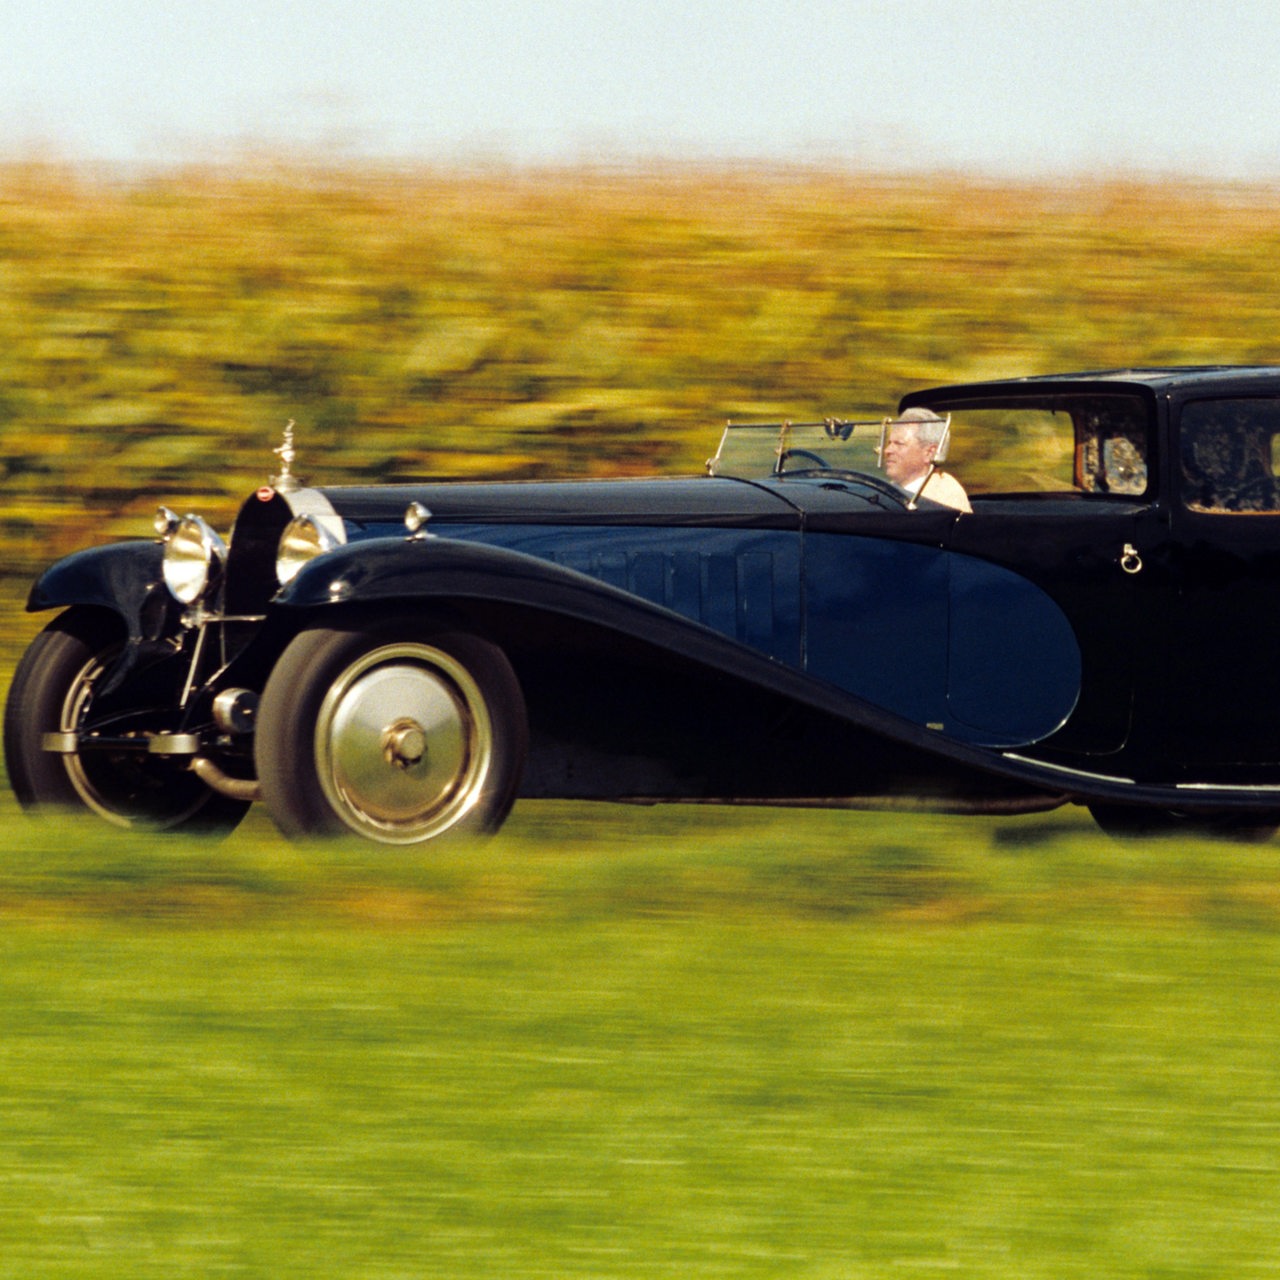 Einer von weltweit sechs existierenden Bugatti Royale und persönliches Fahrzeug des französischen Automobilkonstrukteurs Ettore Bugatti (1881-1947), aufgenommen am 08.09.1993 auf einer Landstraße im Elsaß während seiner ersten Fahrt nach dem Todesjahr Bugattis 1947.